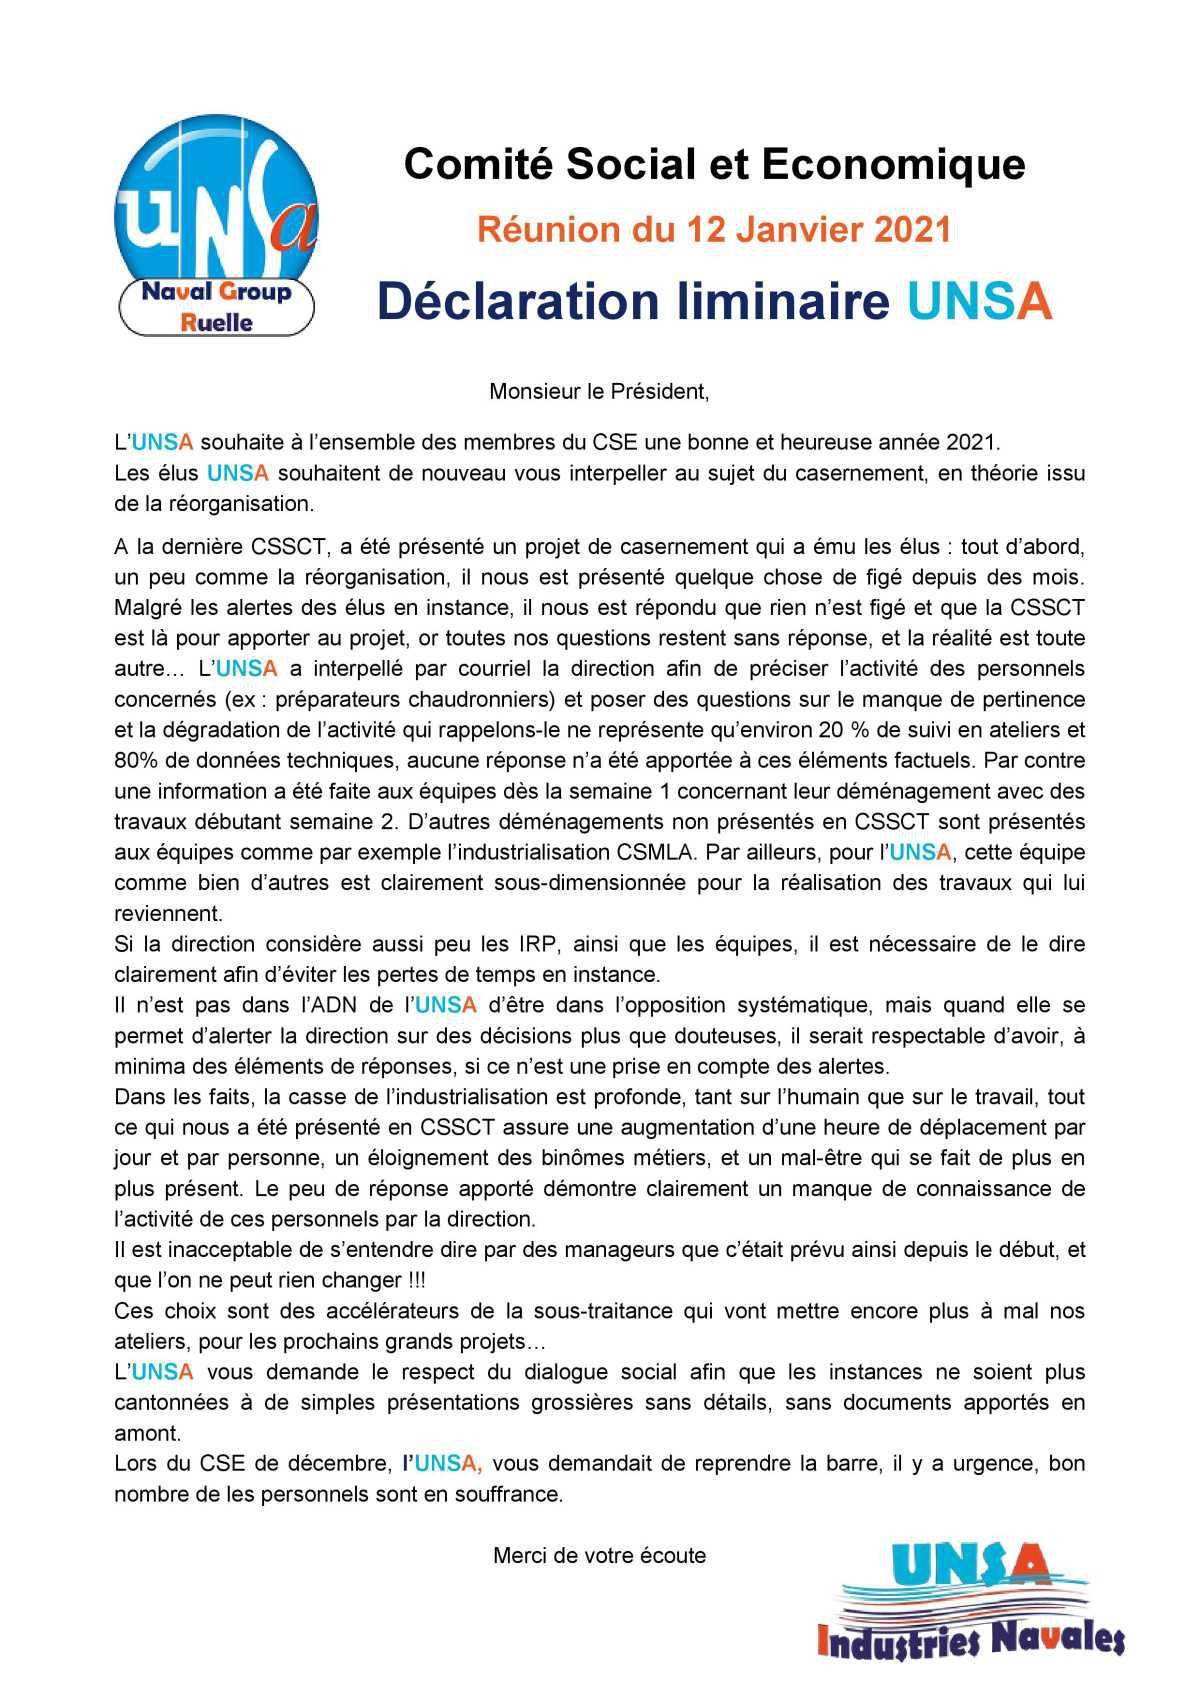 Réunion du 12 janvier 2021 - Déclaration liminaire